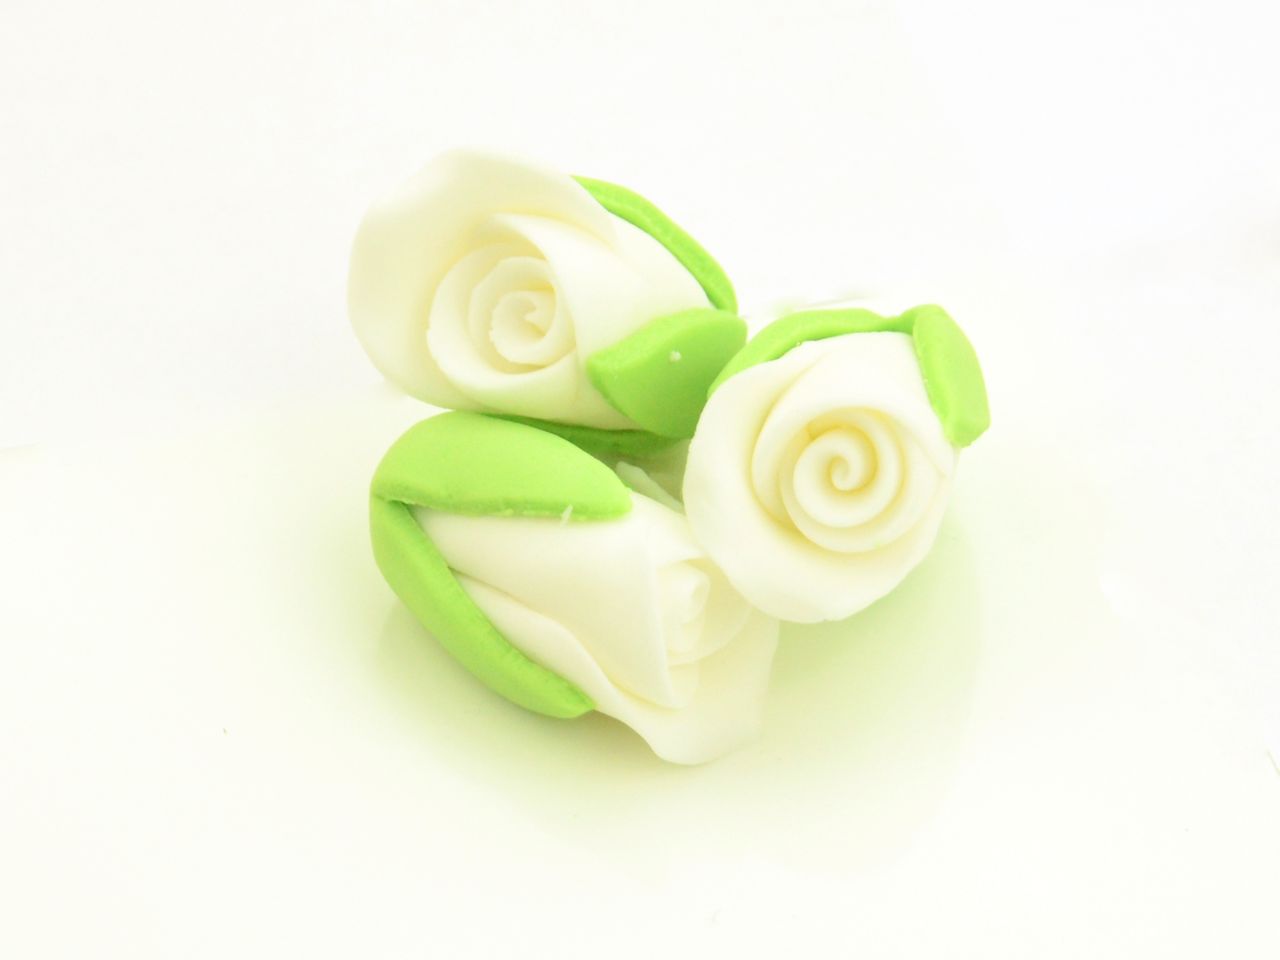 Zuckerblumen Weiße Rosenknospen, Weiß & Grün, 3 Stück à 20 x 27 mm